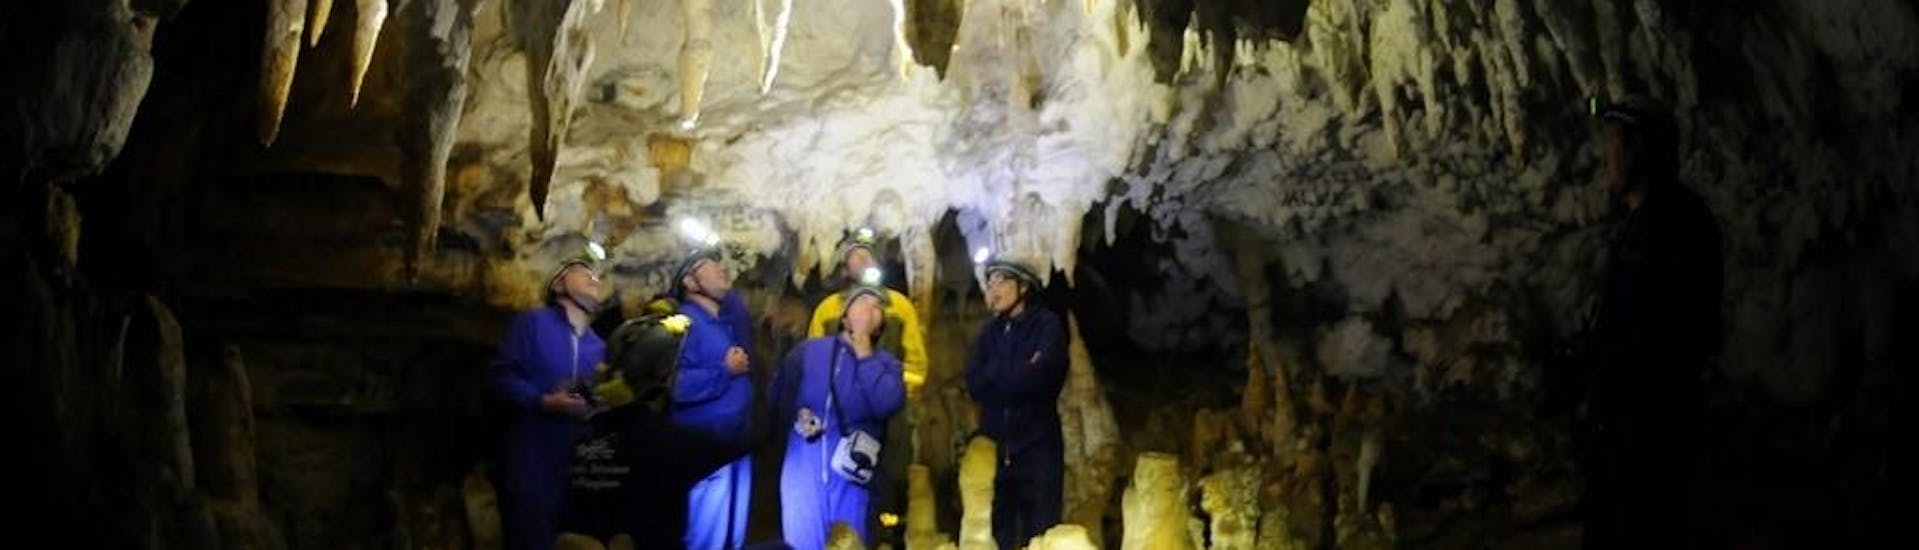 Participantes en una actividad de espeleología en la Cueva de Pando impartida por Rana Sella Arriondas.